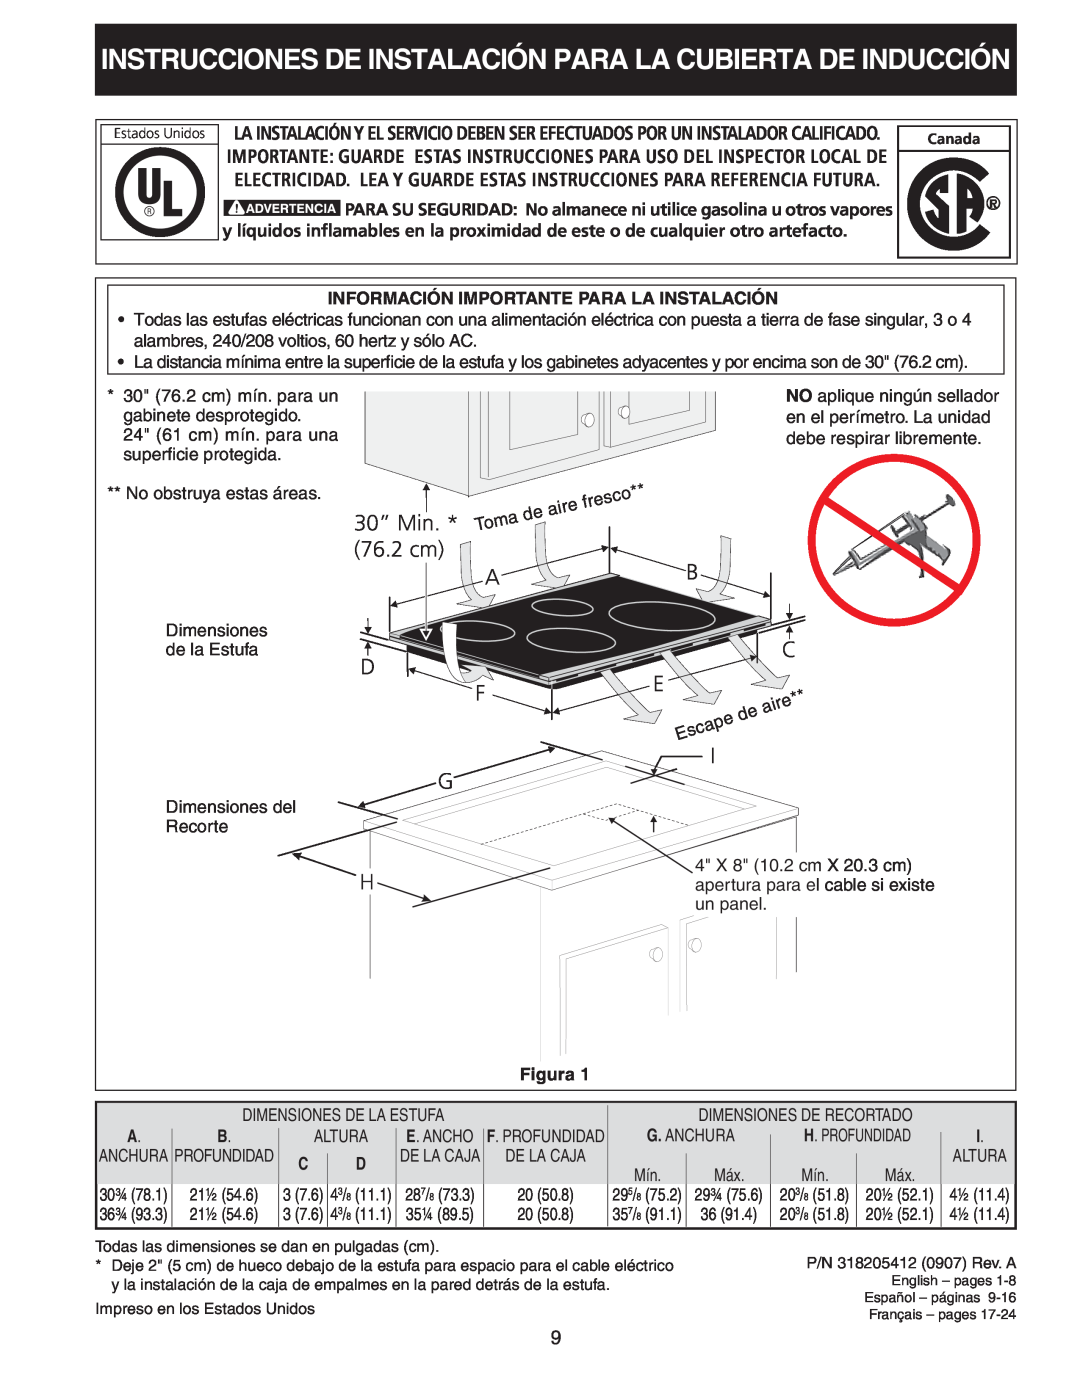 Frigidaire 318205412 Instrucciones De Instalación Para La Cubierta De Inducción, D F G H, 30” Min, 76.2 cm 